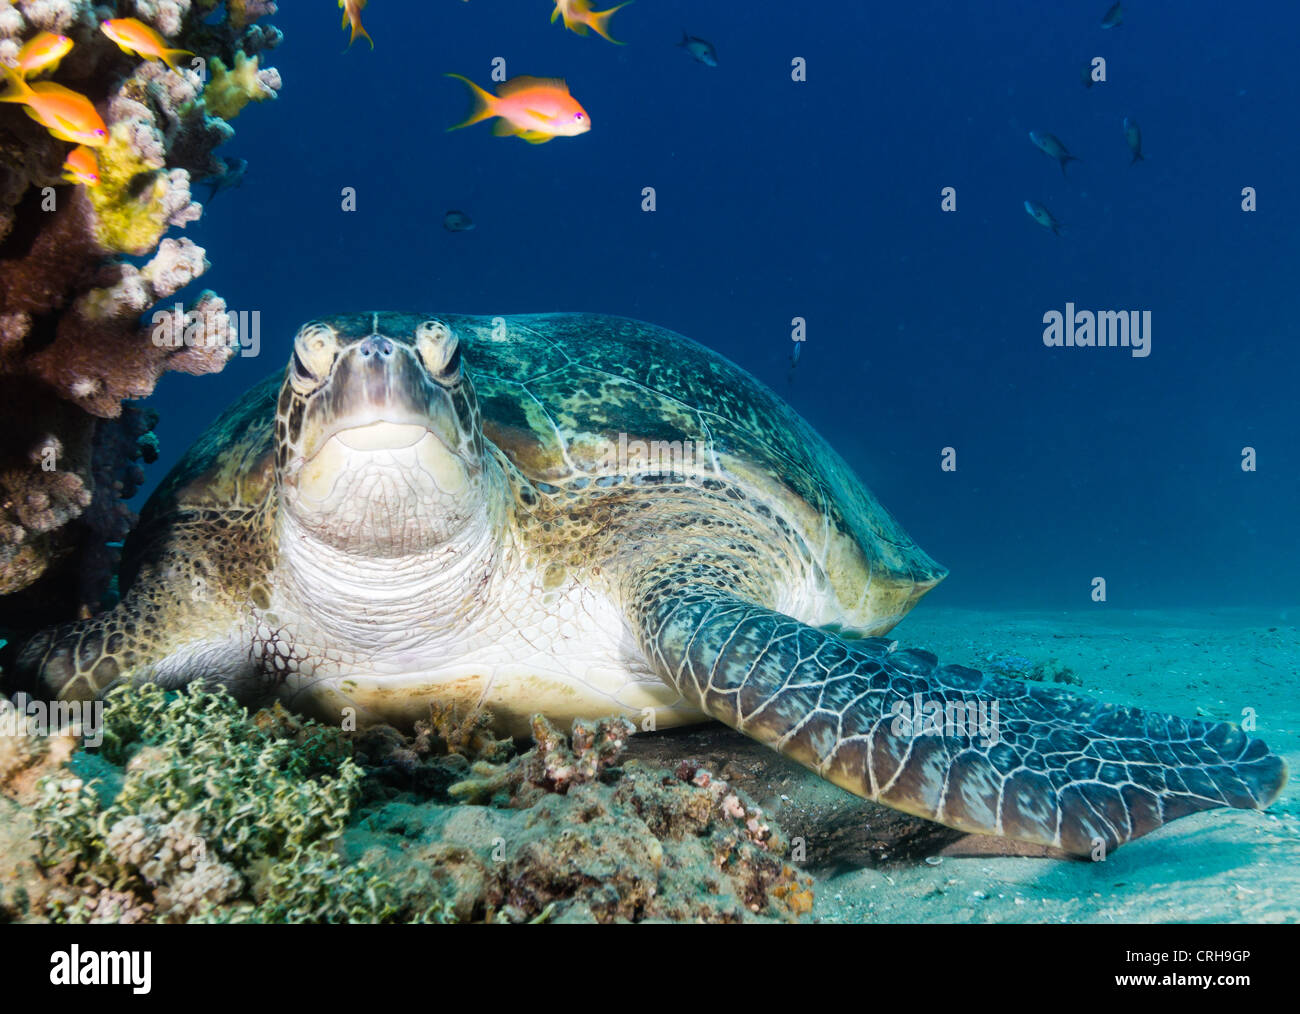 Neugierig Suppenschildkröte sieht direkt auf die Kamera, wie es auf dem Meeresboden neben einem flachen Korallen Pinnacle ruht Stockfoto